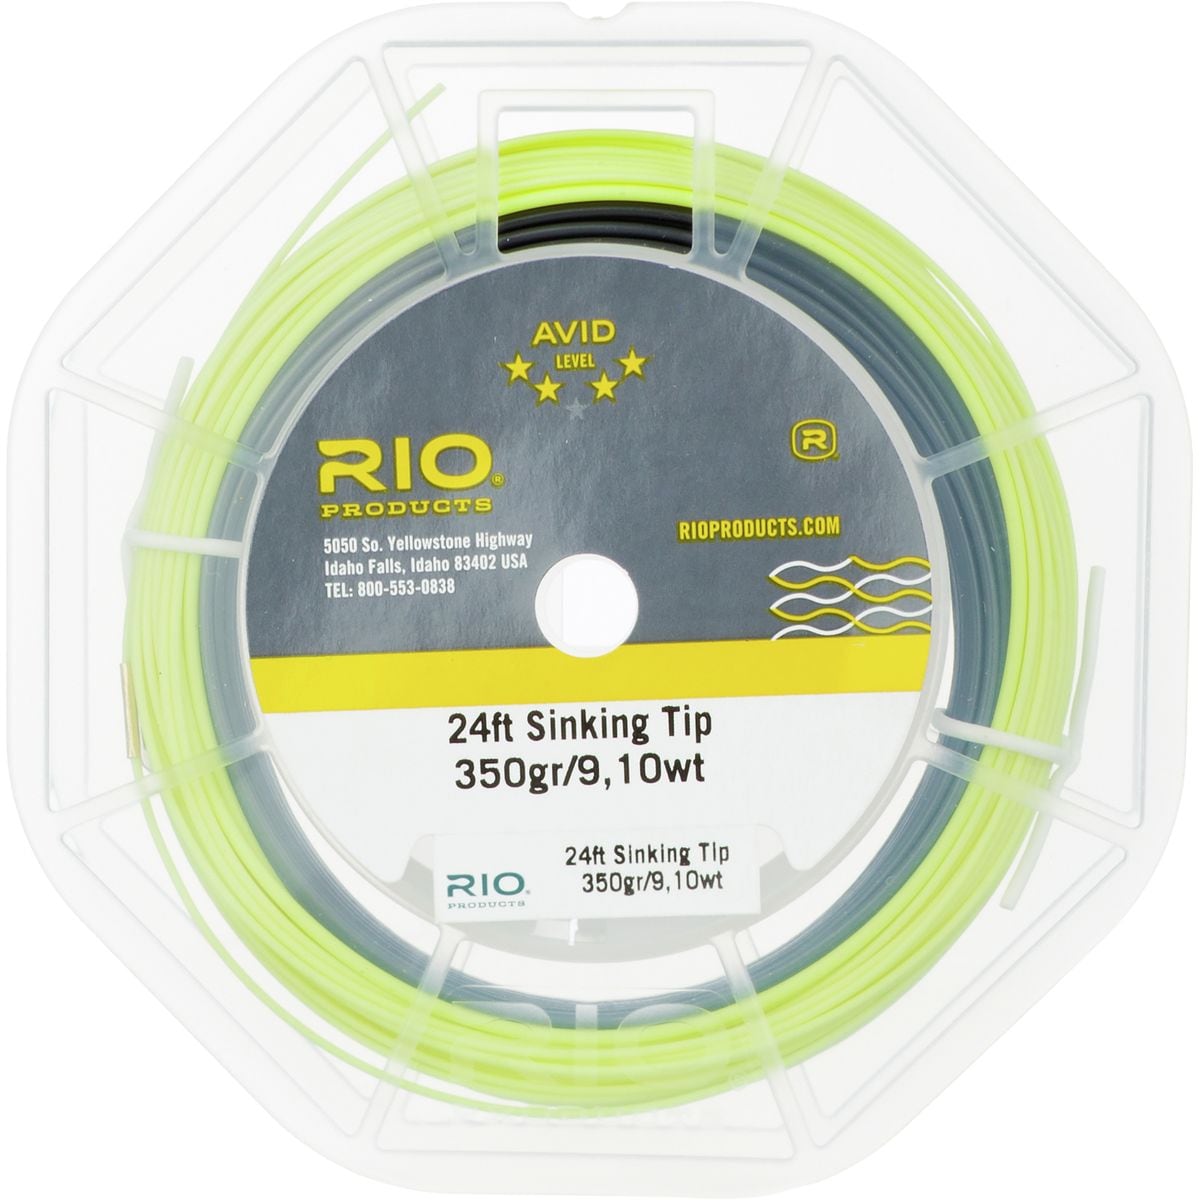 Rio Avid 24' Sinking Tip Fly Line